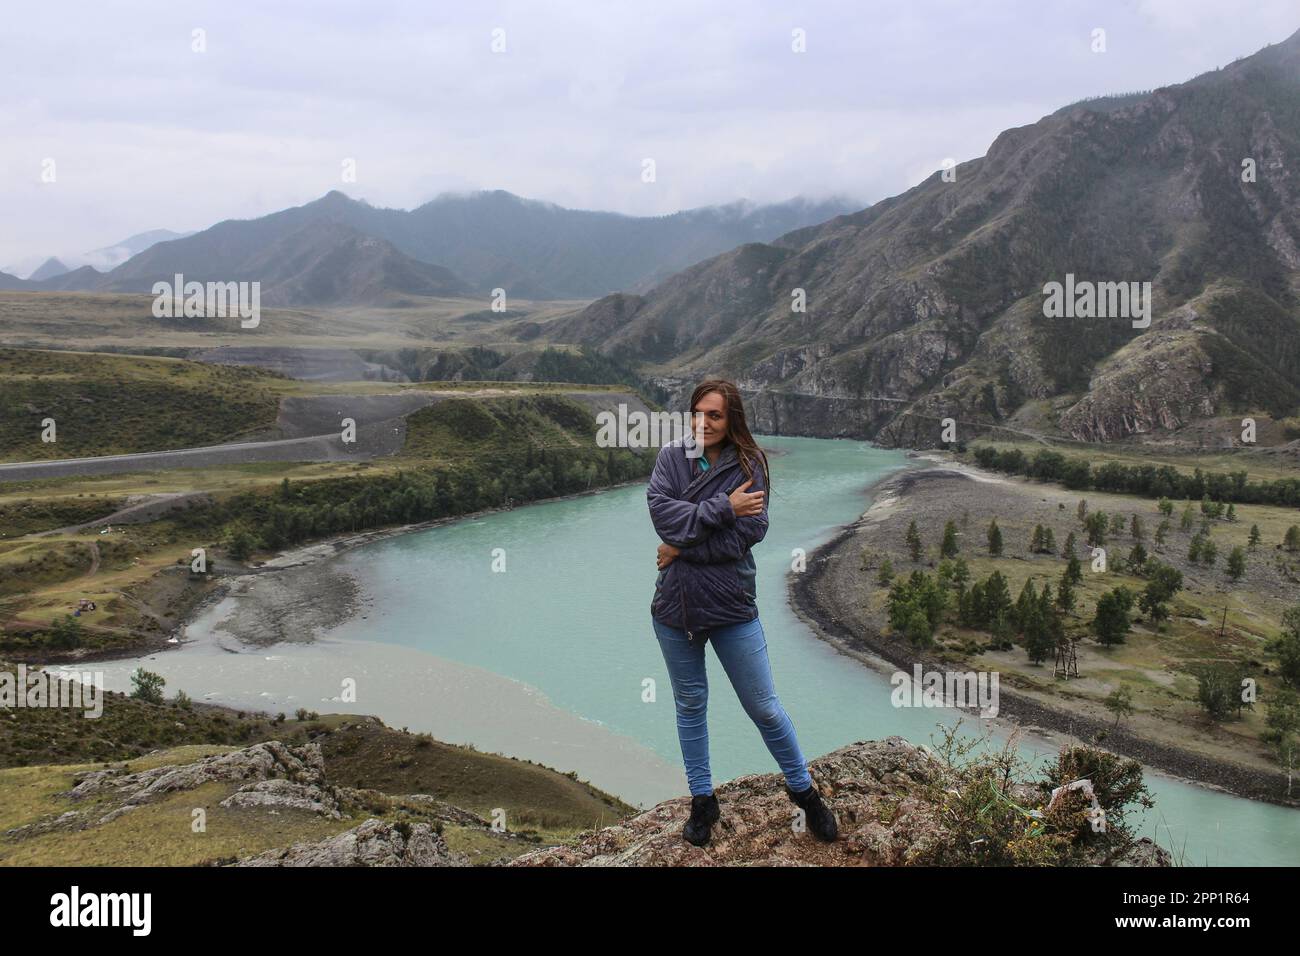 Junge Frau, die am Zusammenfluss zweier Flüsse verschiedener Farben, Chuya und Katun, steht. Berglandschaft, Altai Republik, Russland. Hohe Qual Stockfoto